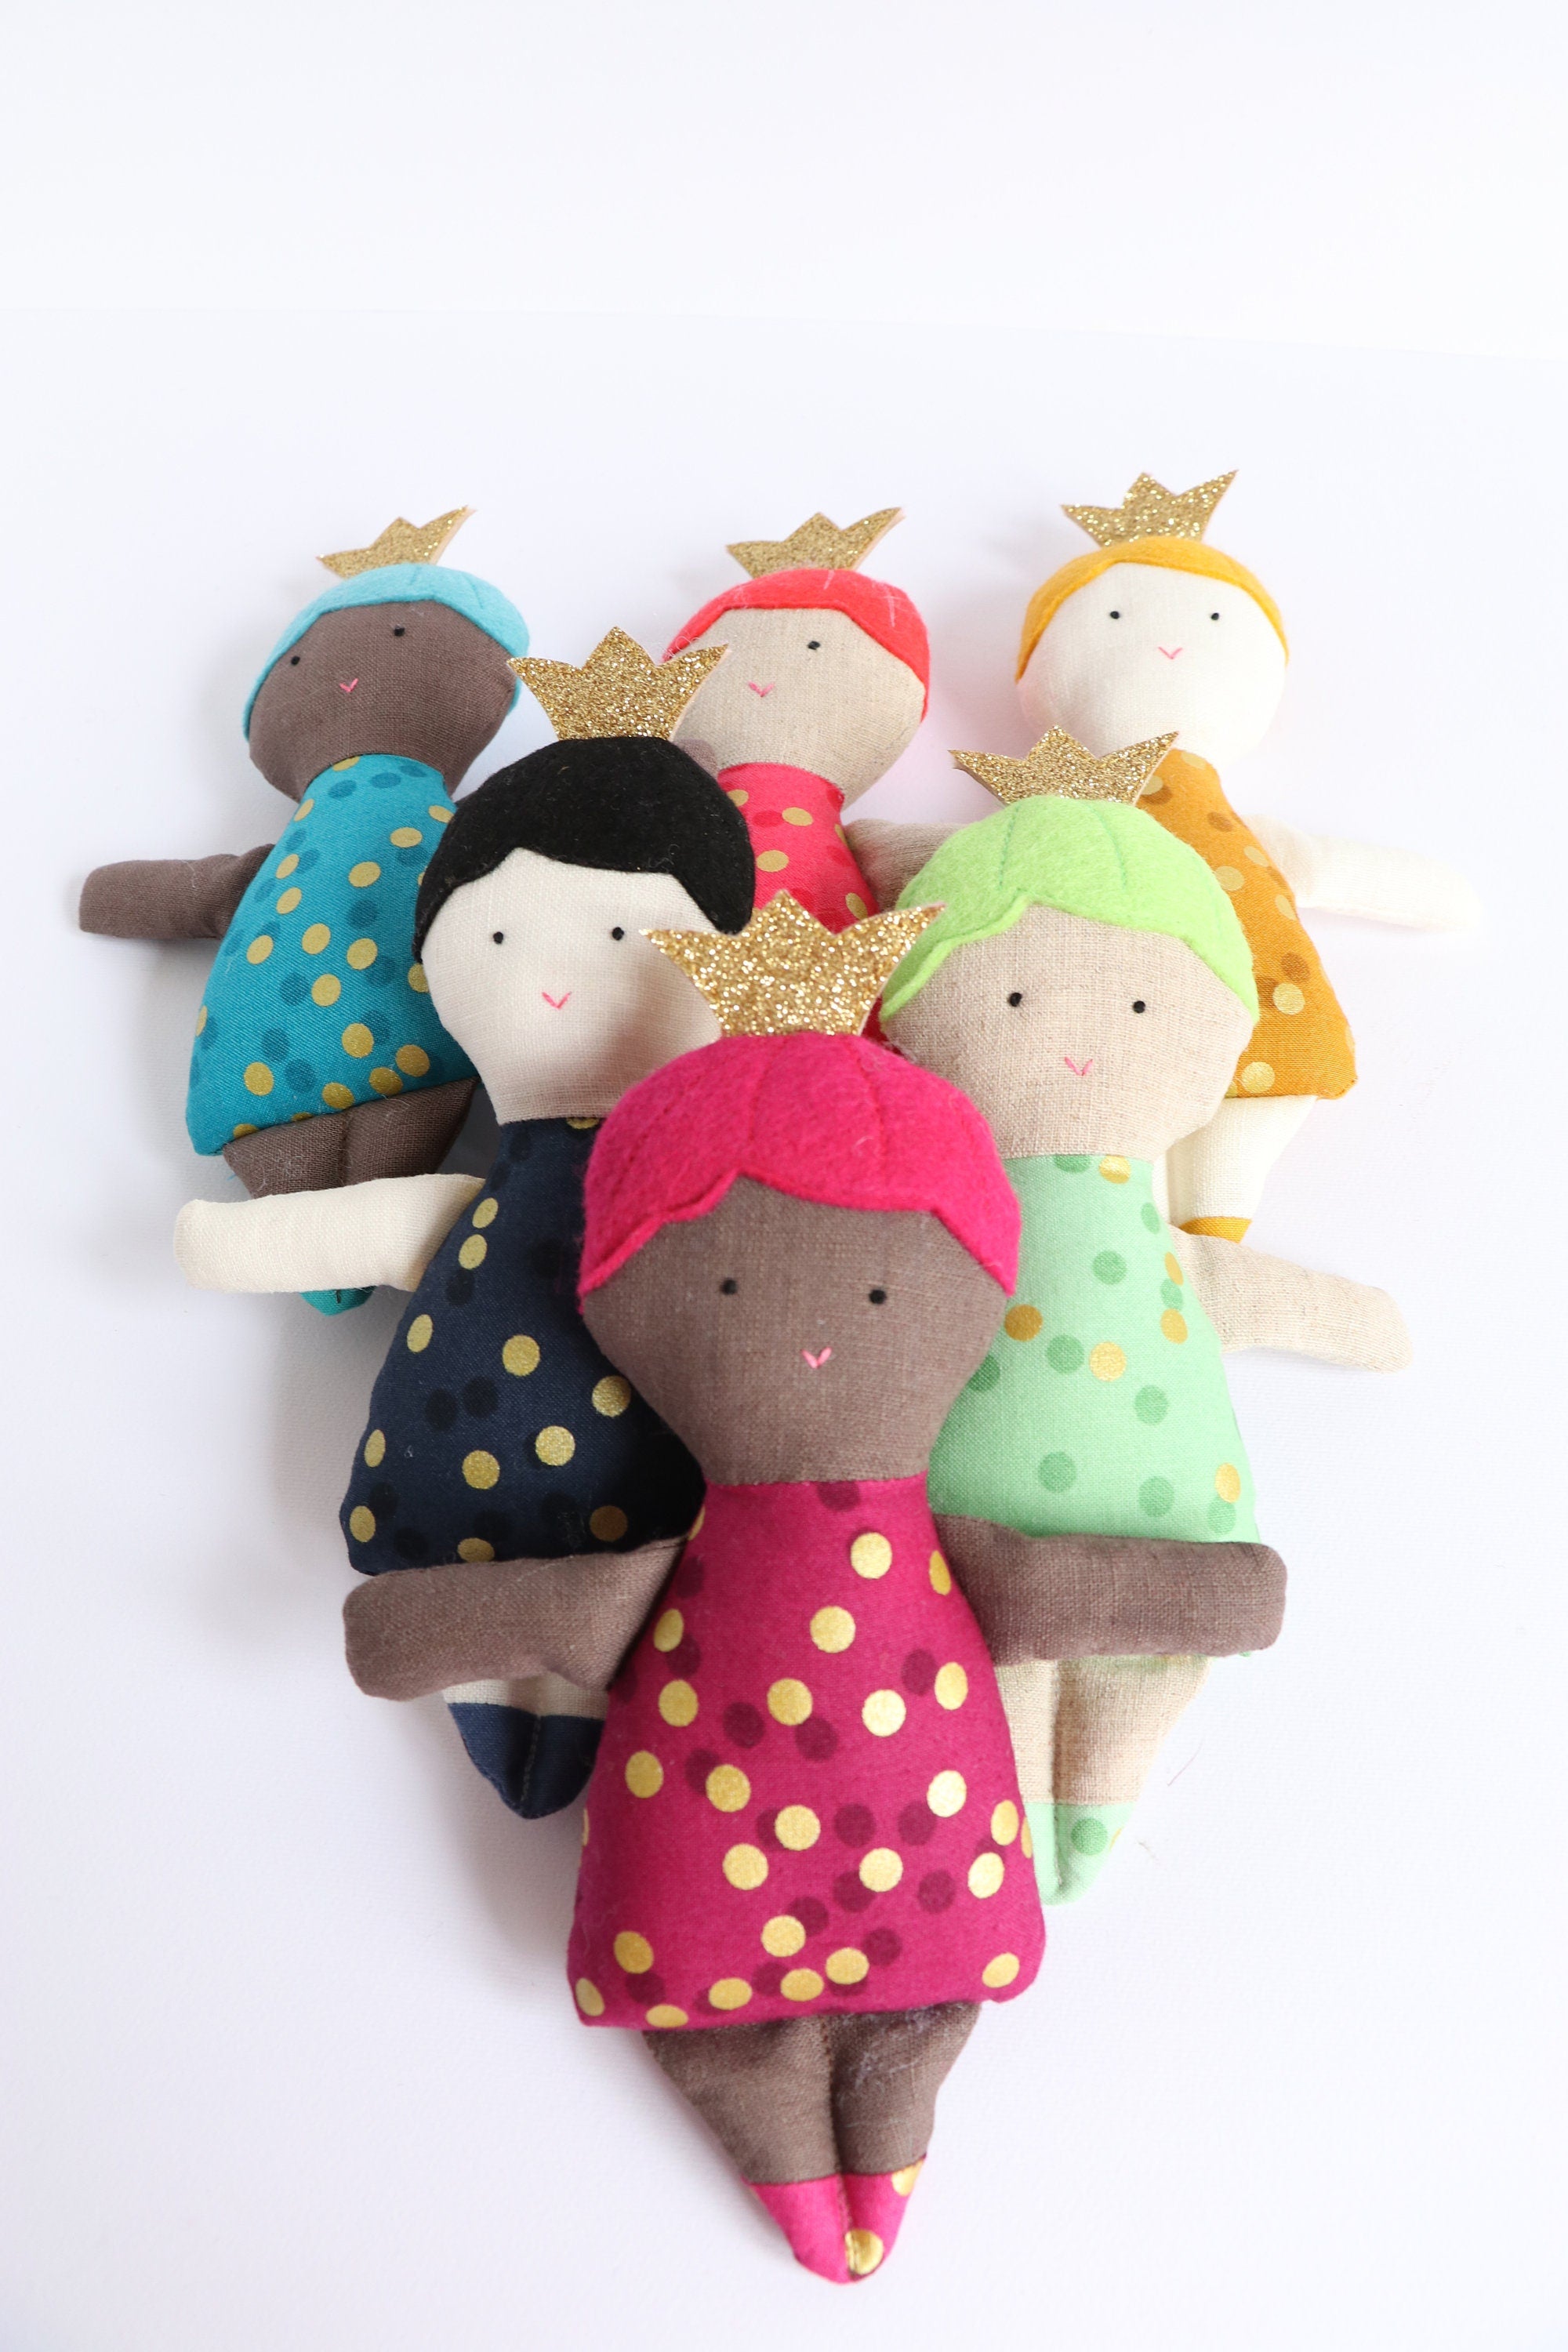 six dolls wearing crowns